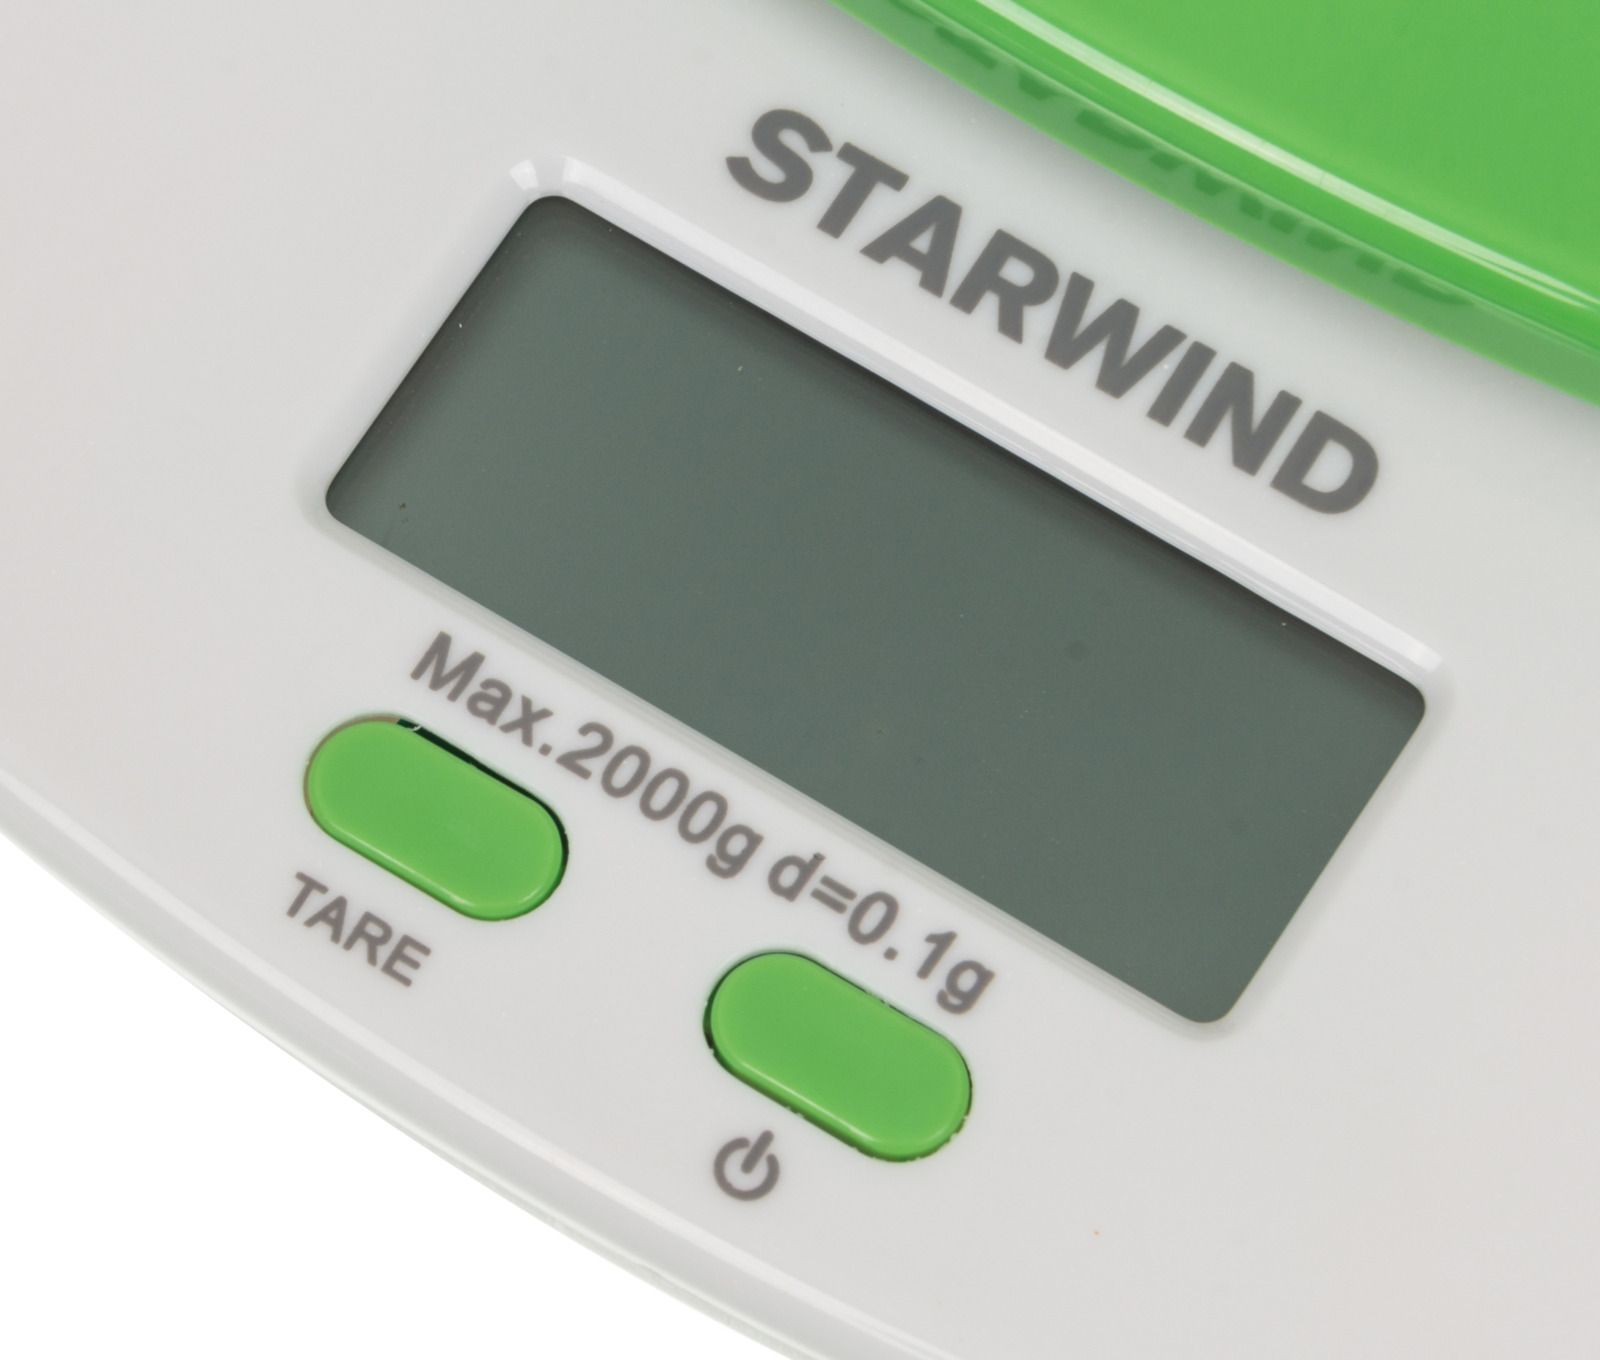 Starwind SSK2155, Green  